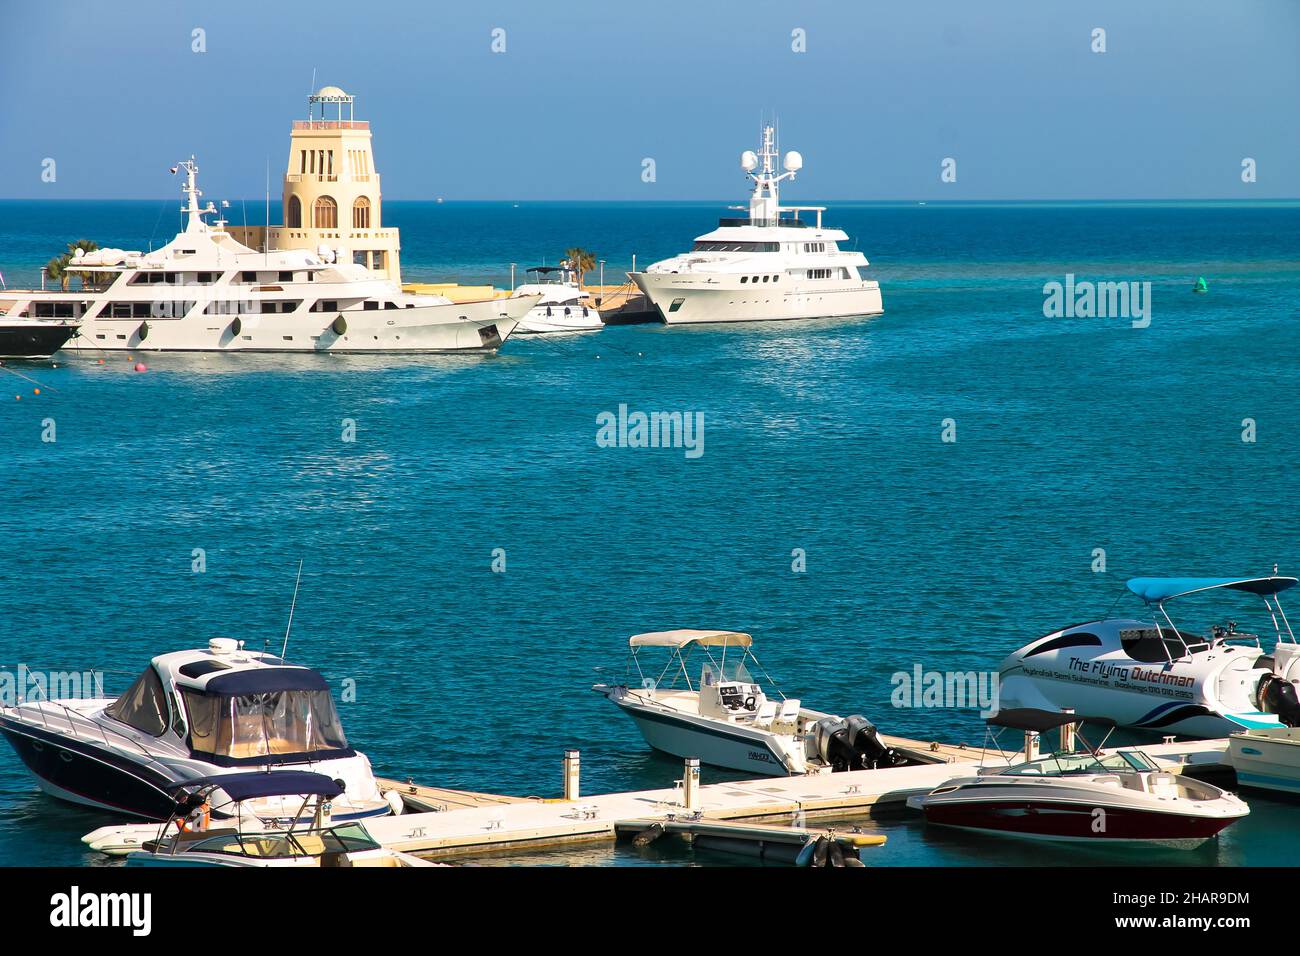 El Gouna, Egypt, February 1, 2019. Abu Tig marina harbor for motor yachts, boats Stock Photo